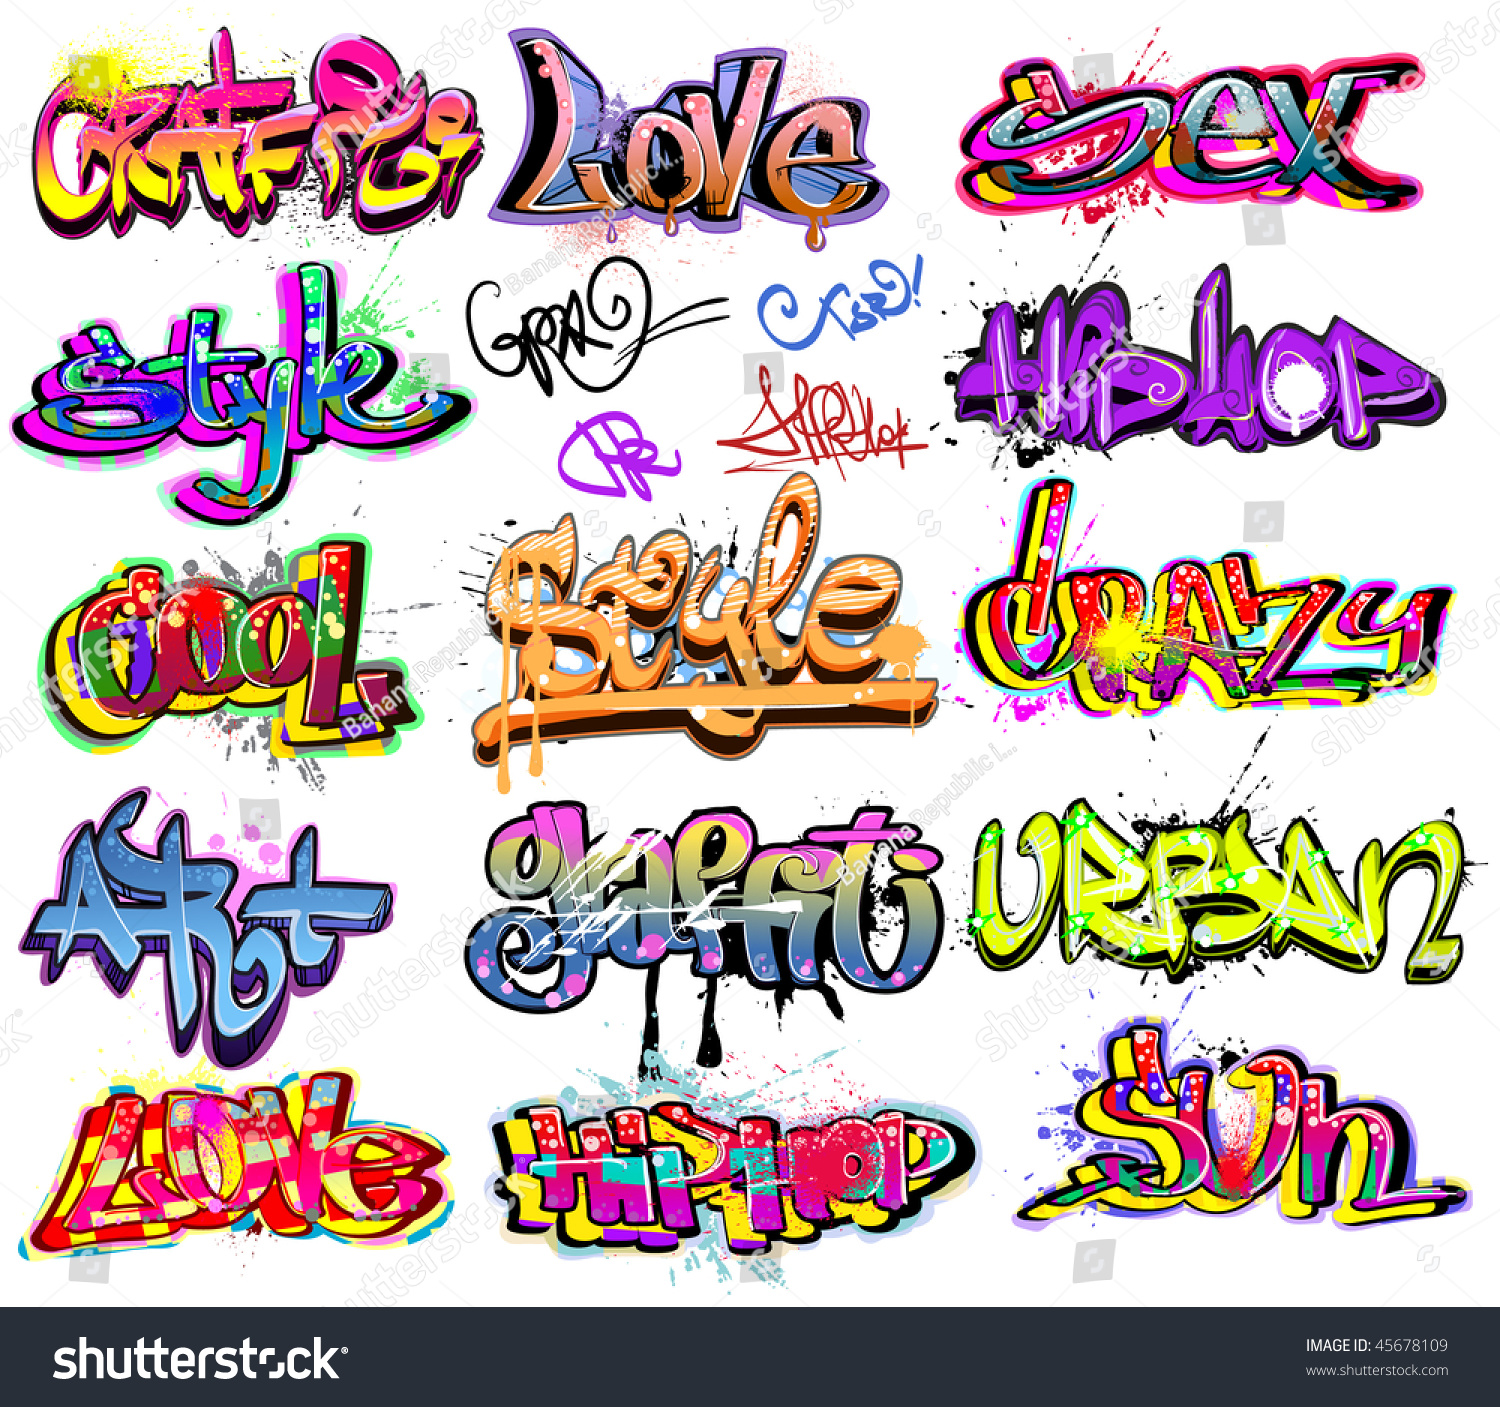 Graffiti Urban Art Hip Hop Grafitti Words Royalty Free Stock Vector Avopix Com